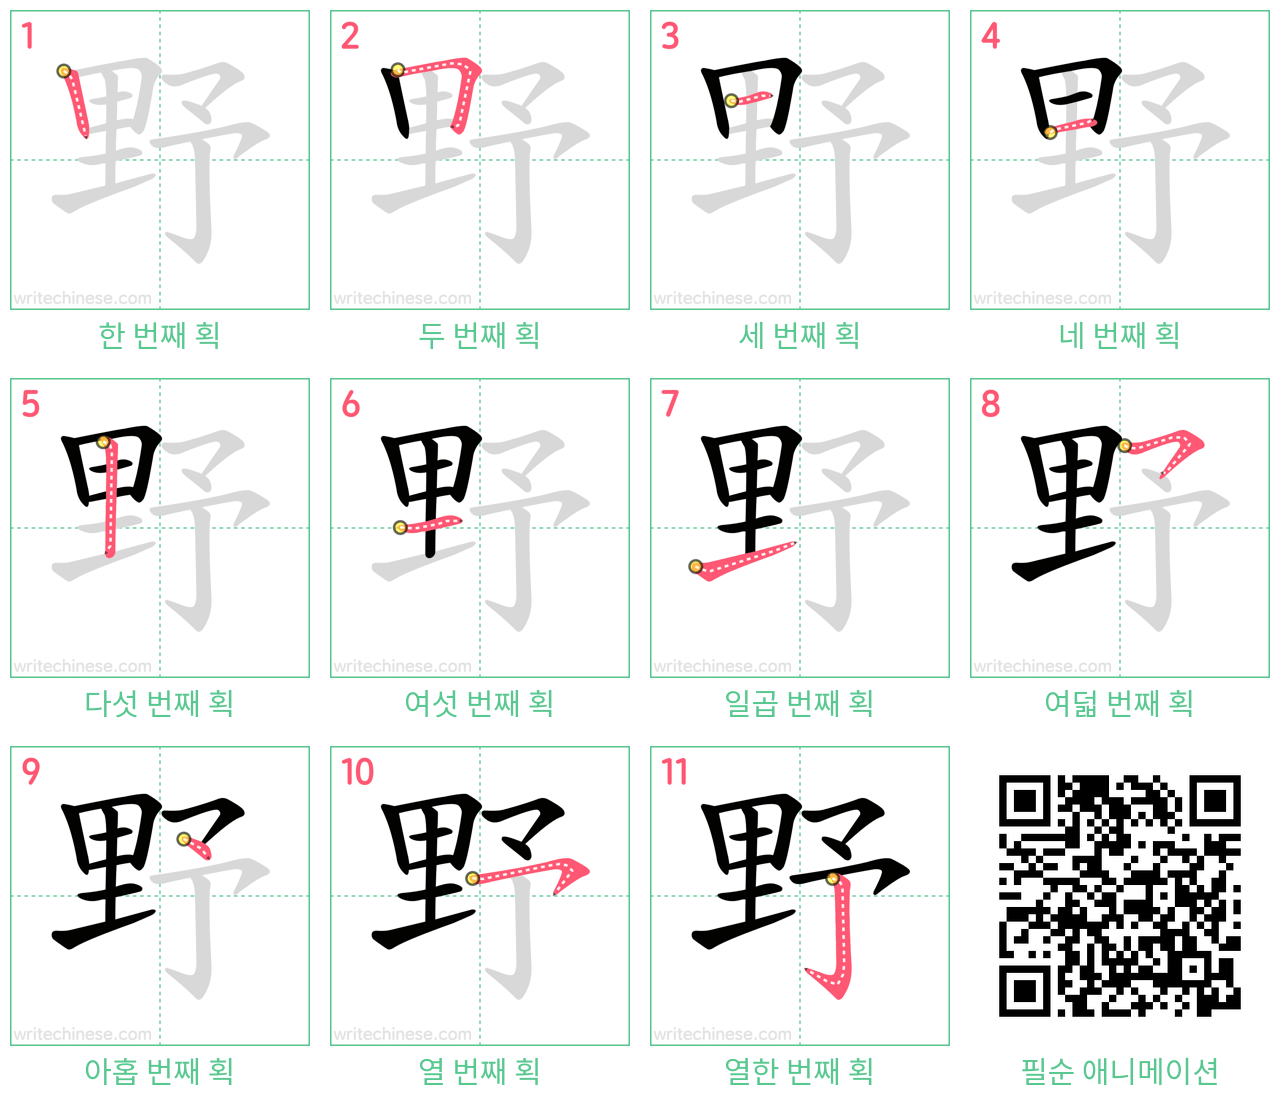 野 step-by-step stroke order diagrams